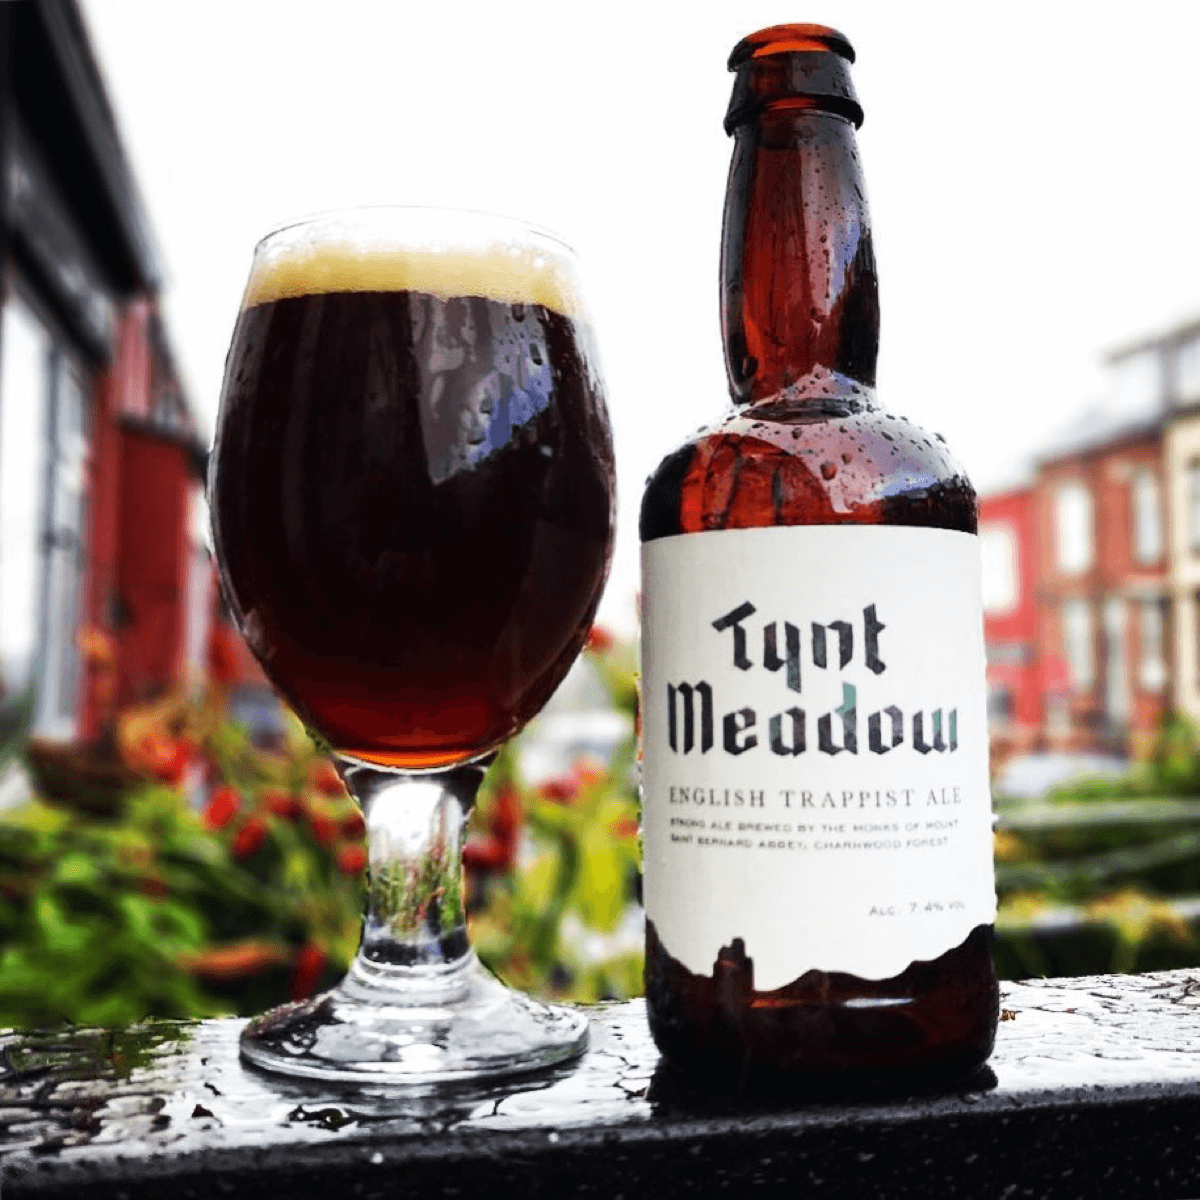 La Tynt Meadow est la première et unique bière trappiste 100% anglaise